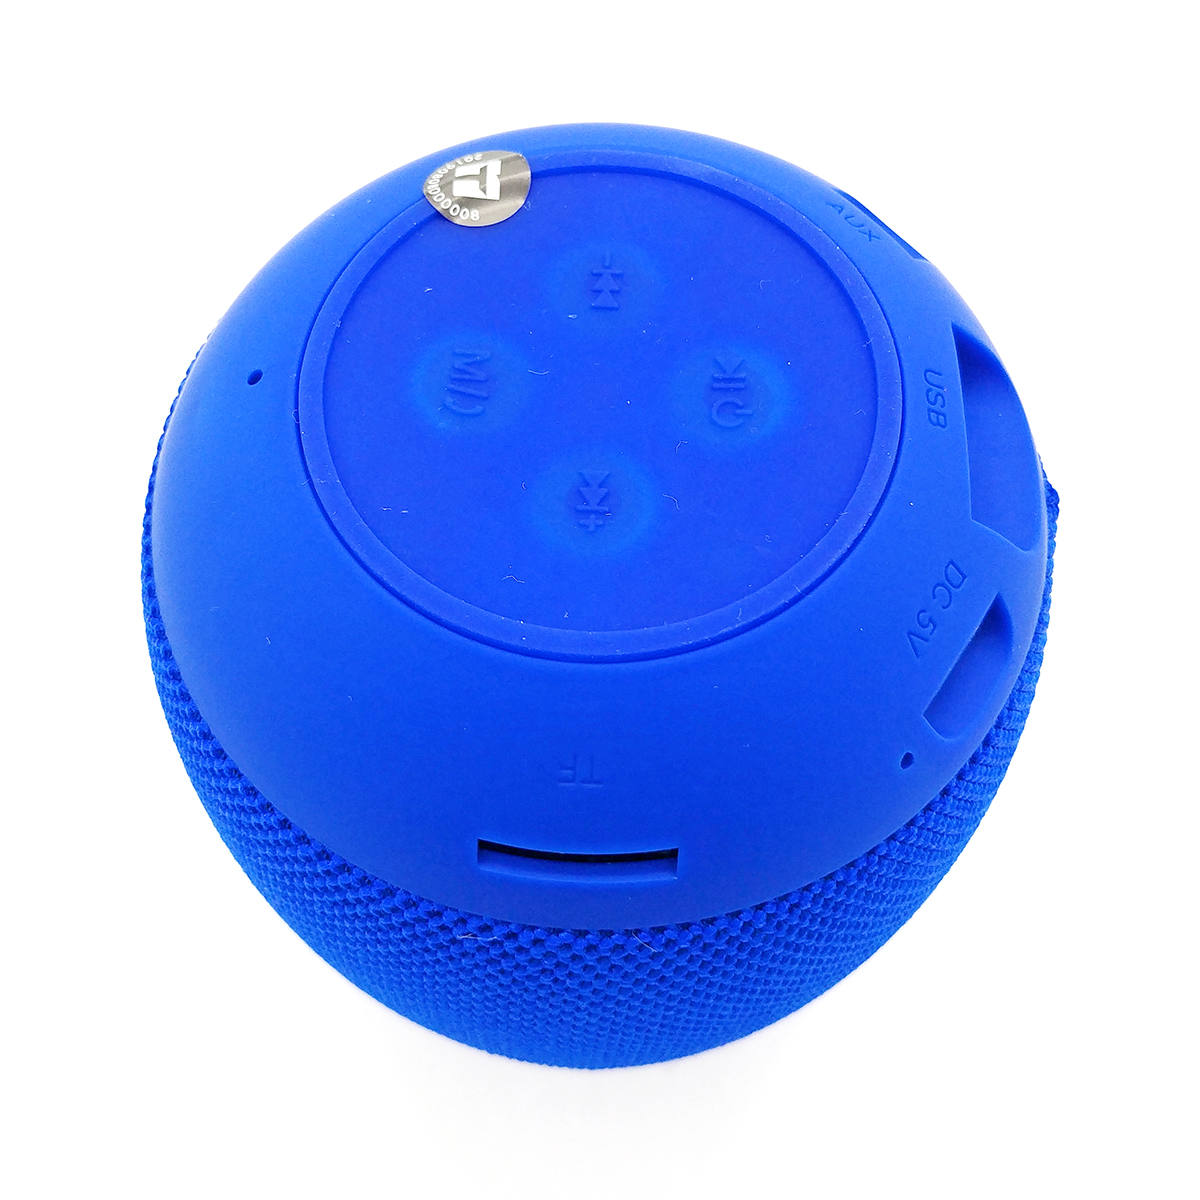 Caixa de Som Portátil Bluetooth 4.2 3W Entrada USB Micro SD Auxiliar P2 Rádio Função Atende Telefone Exbom CS-M26BT Azul